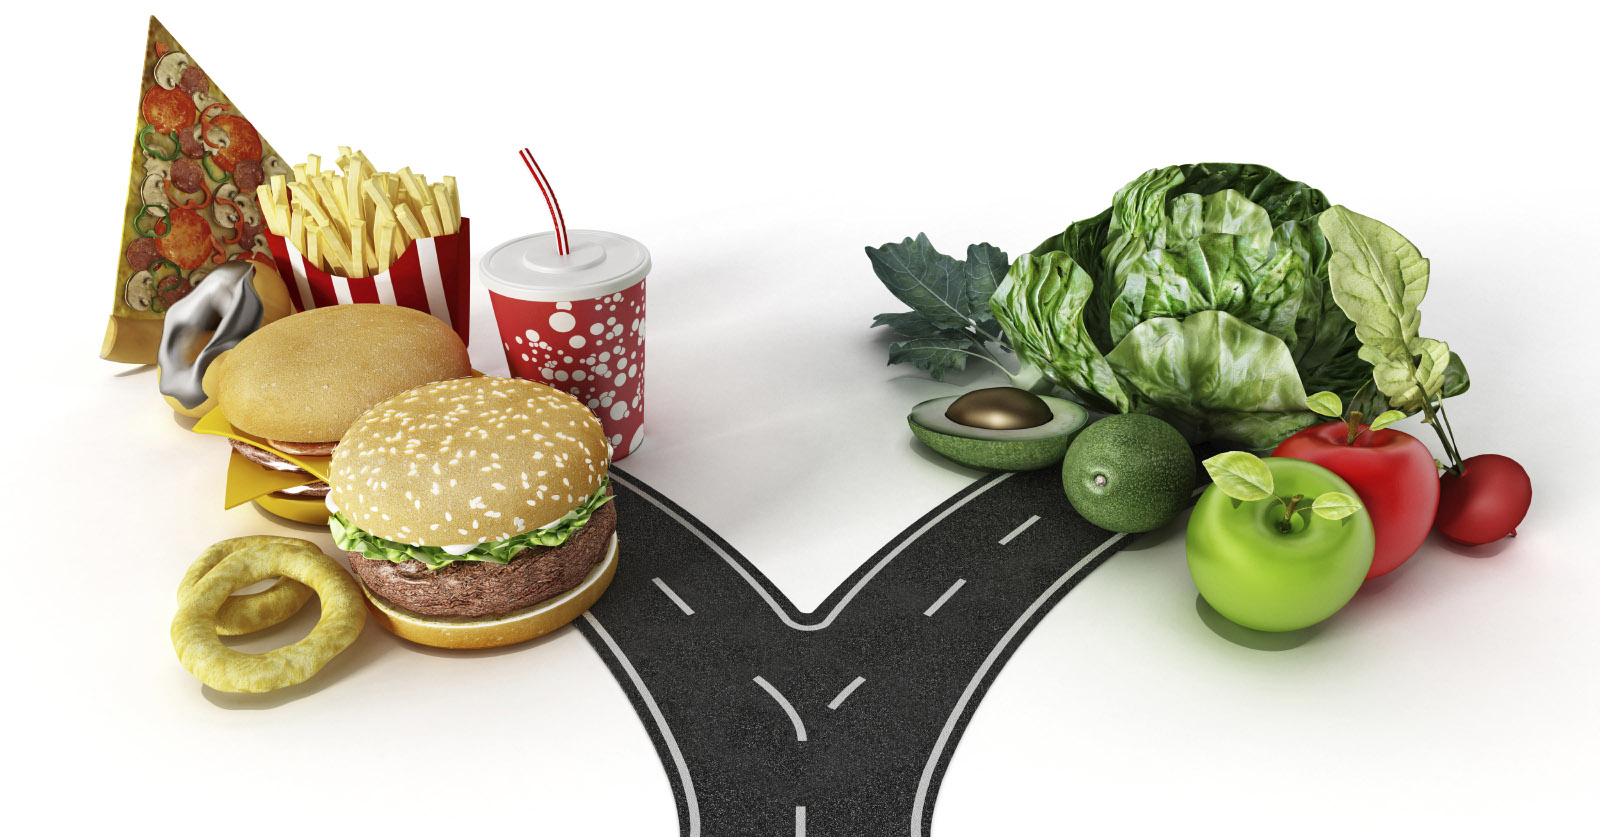 3148-junk-food-vs-healthy-food.jpg